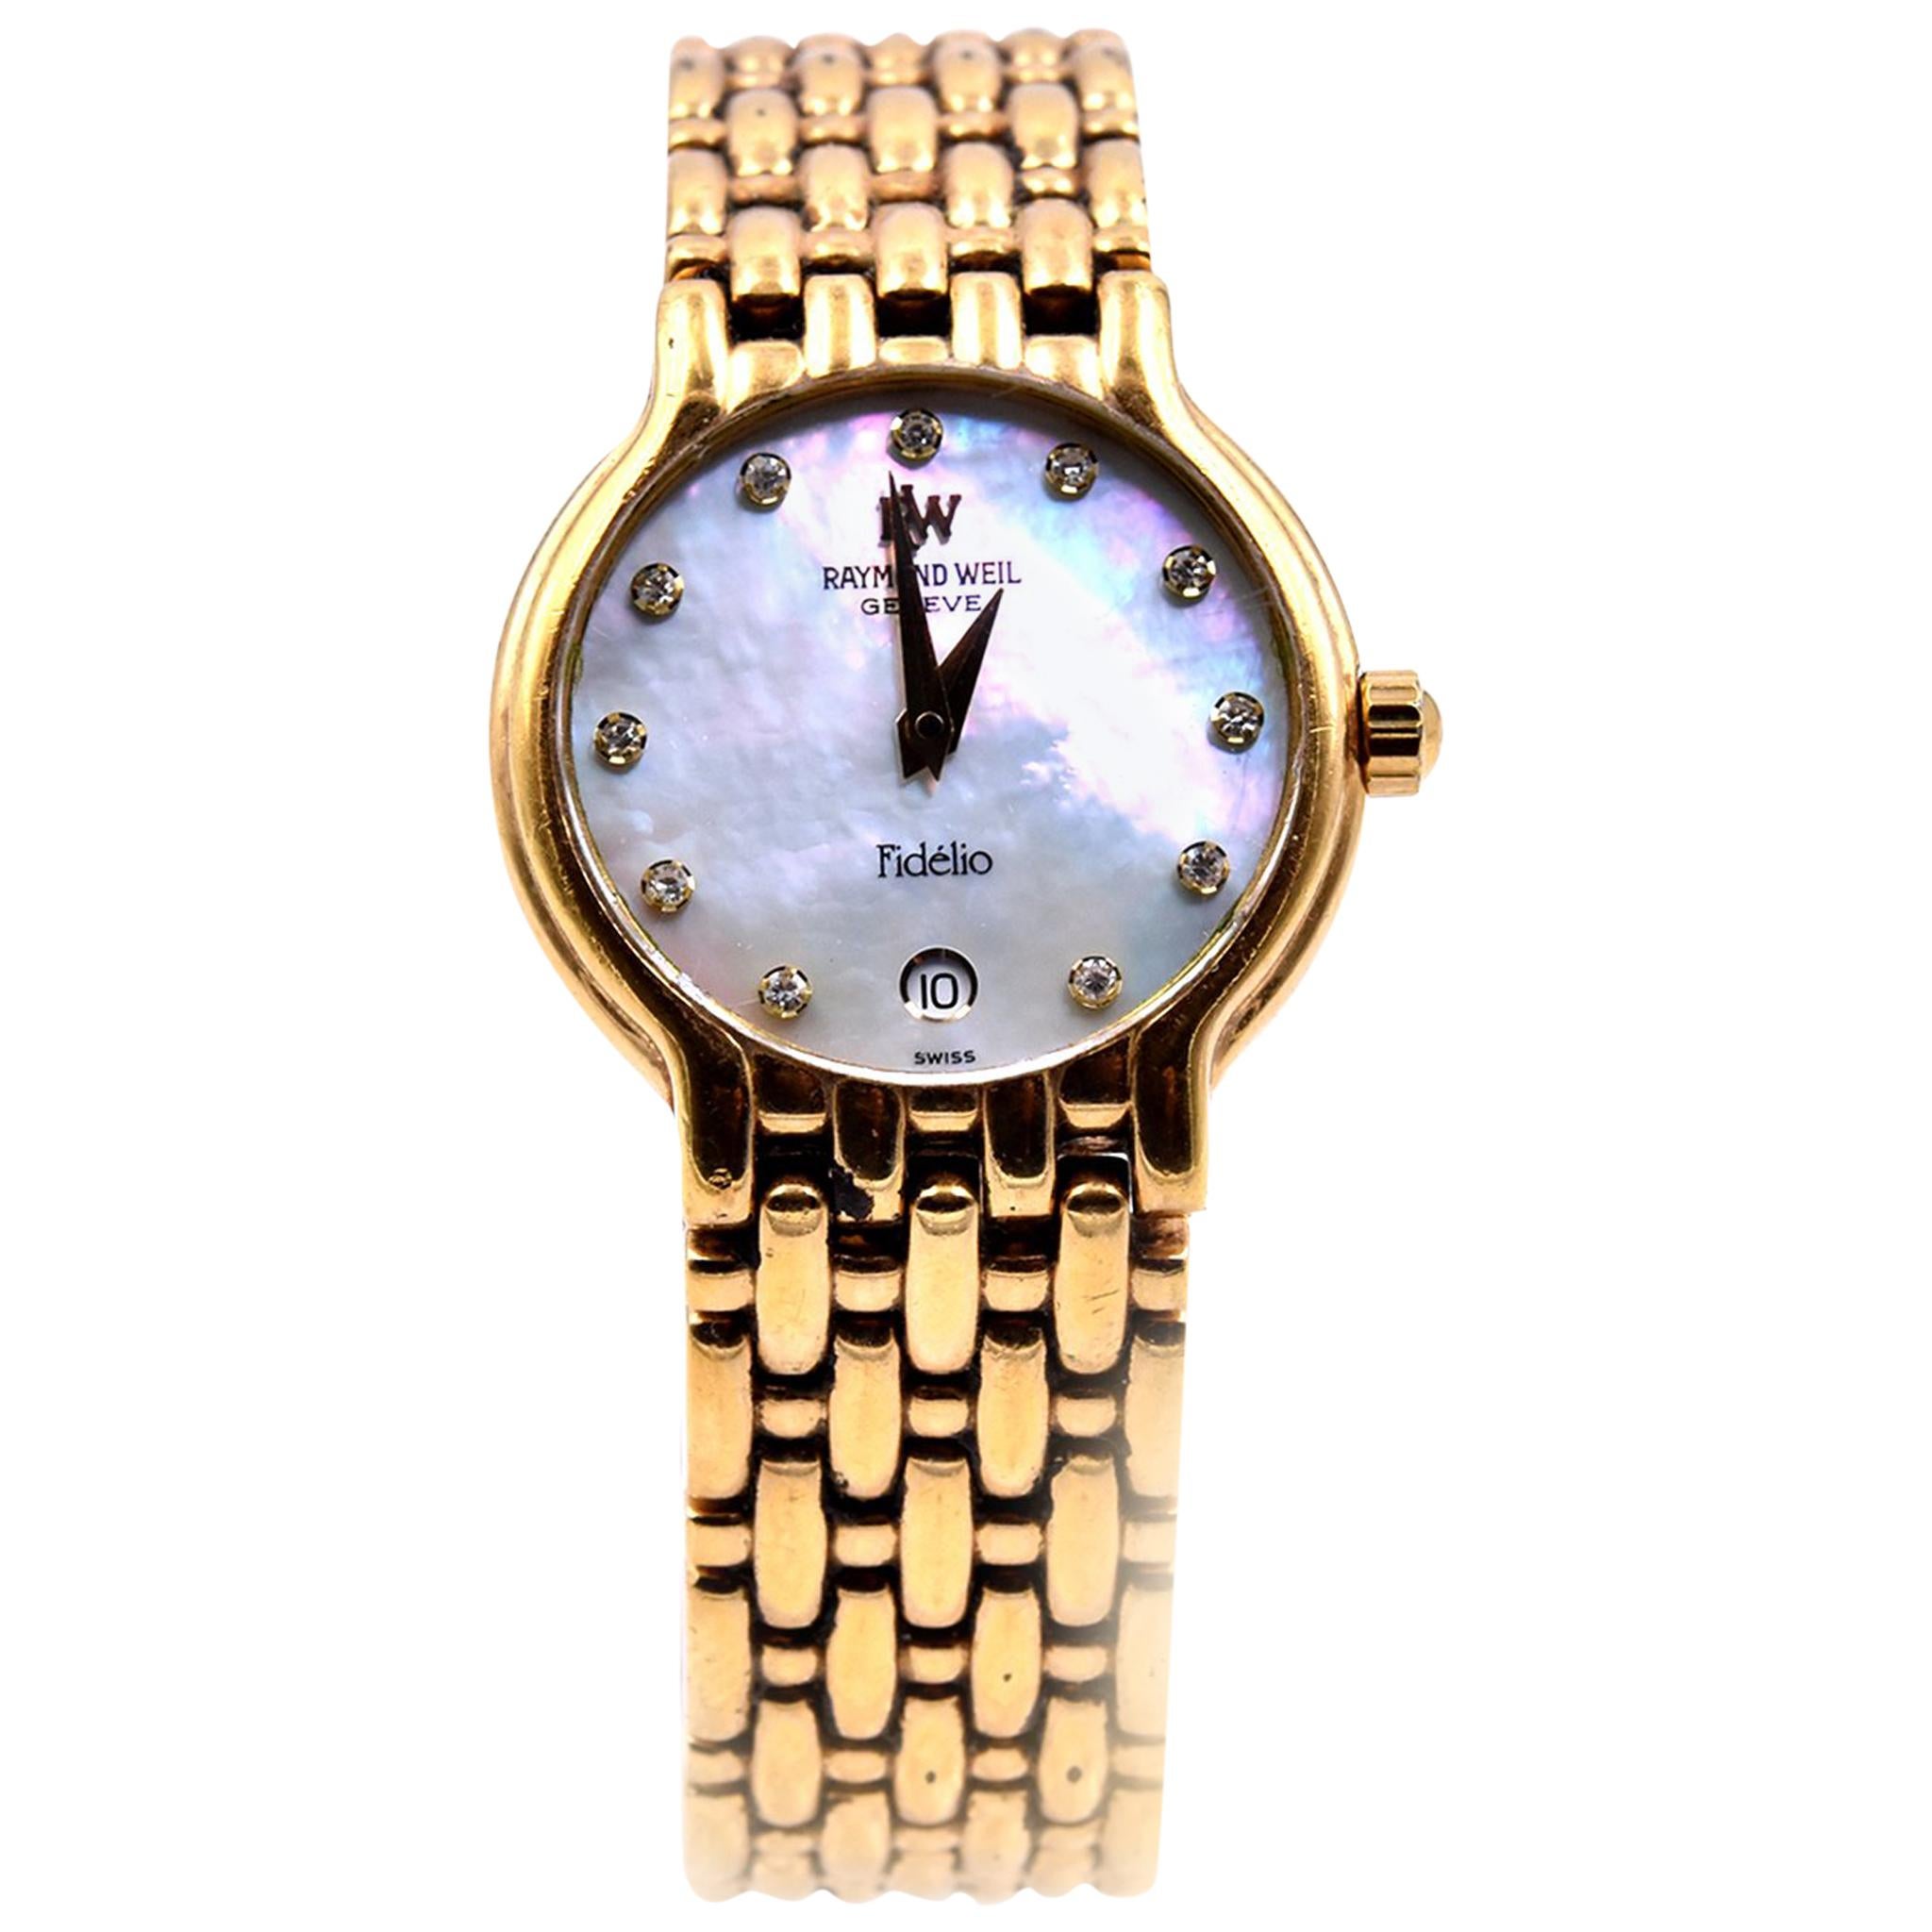 Raymond Weil 18 Karat Yellow Gold-Plated Fidelio Watch Ref. 4702